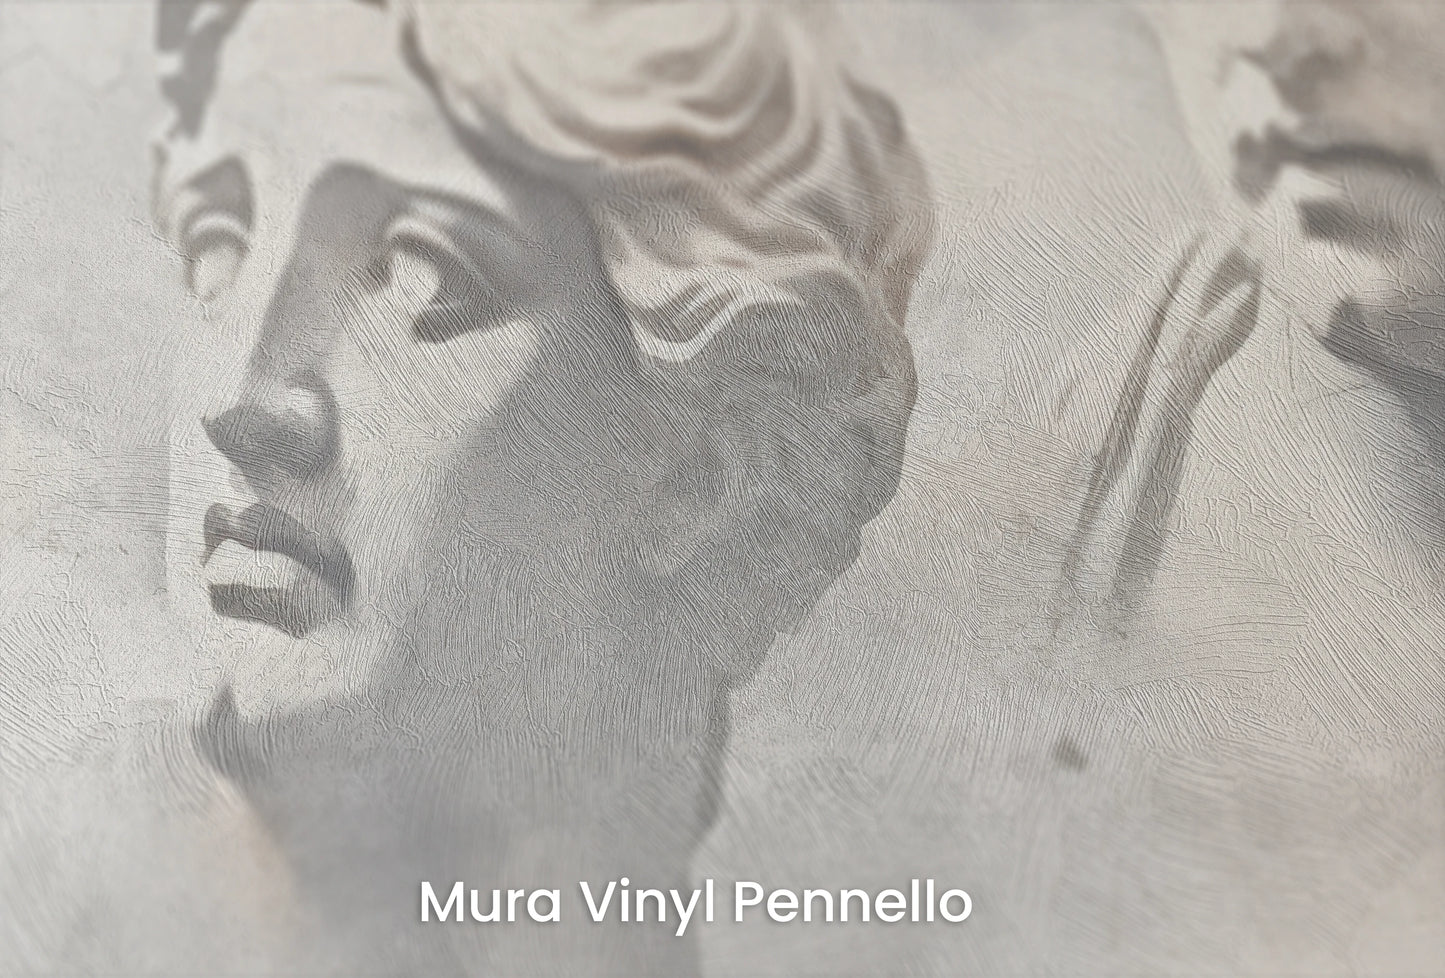 Zbliżenie na artystyczną fototapetę o nazwie Apollo and Daphne na podłożu Mura Vinyl Pennello - faktura pociągnięć pędzla malarskiego.